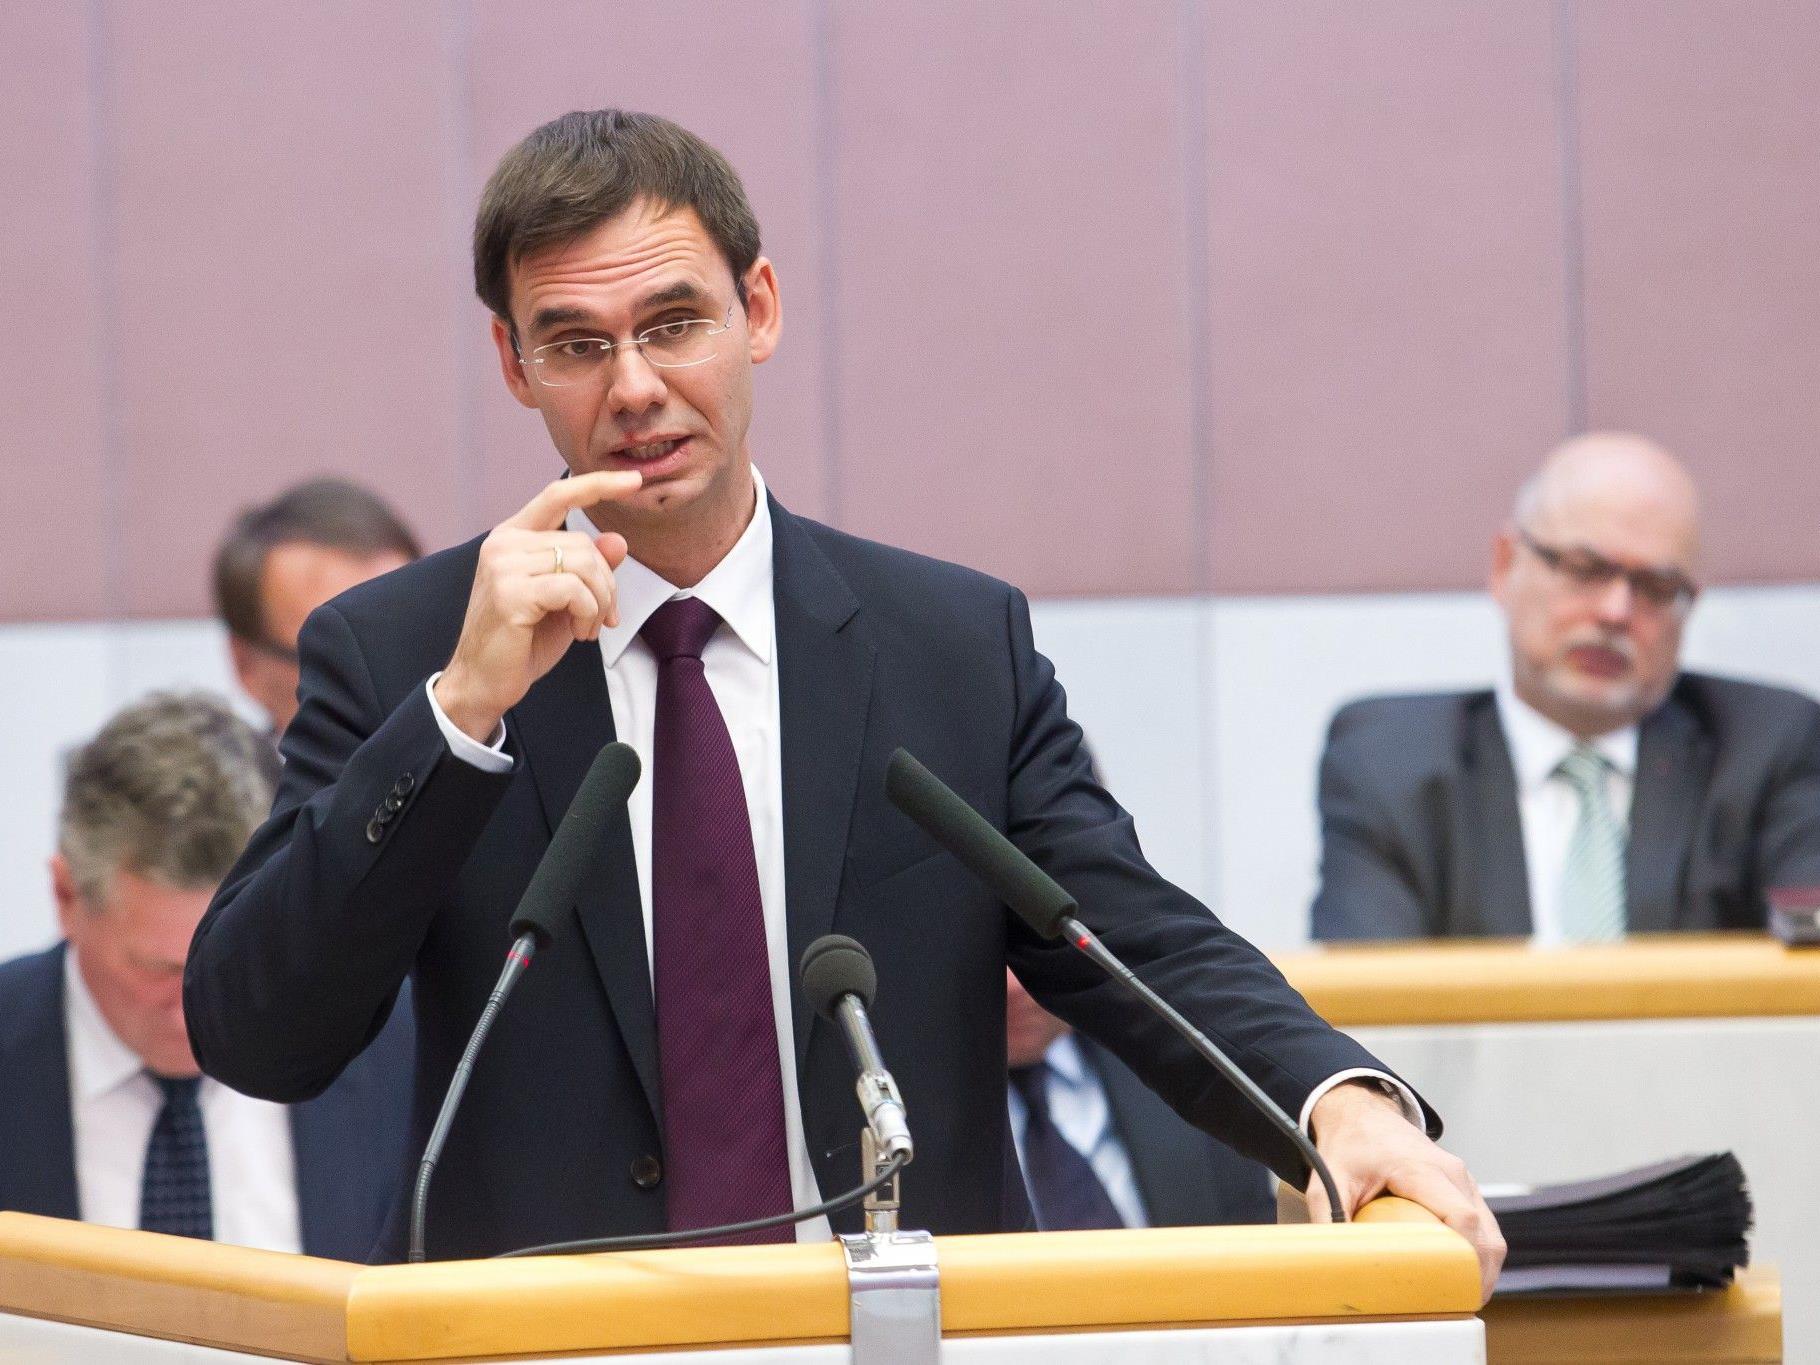 Vorarlberger Regierungschef warnt vor "Steuererhöhung durch die Hintertür".